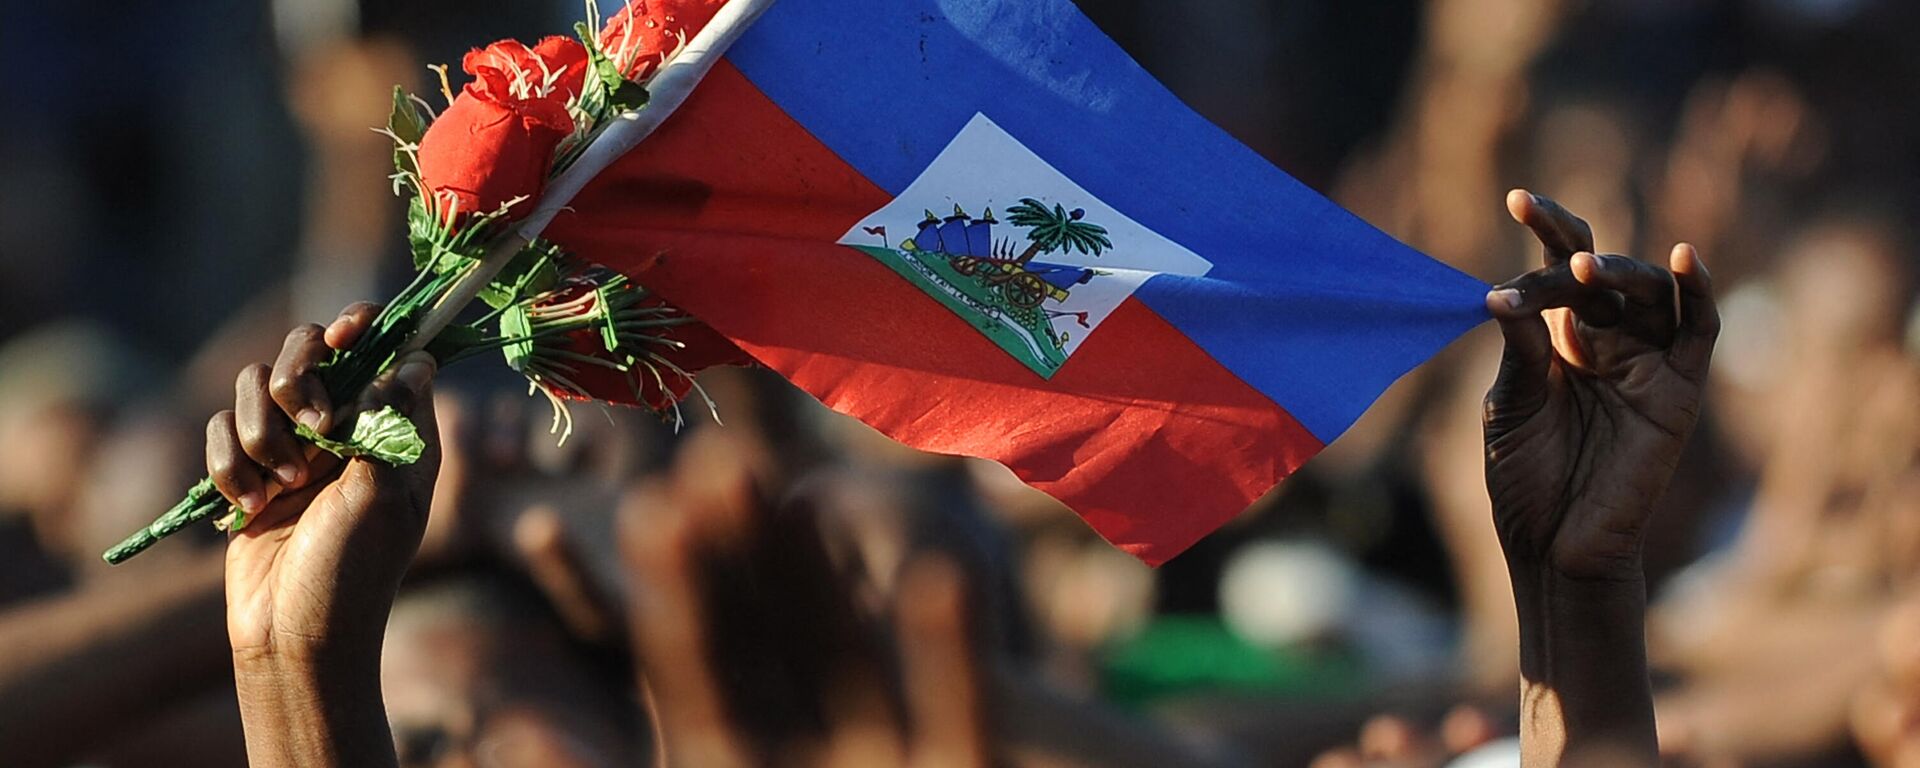 La bandera de Haití - Sputnik Mundo, 1920, 28.07.2021